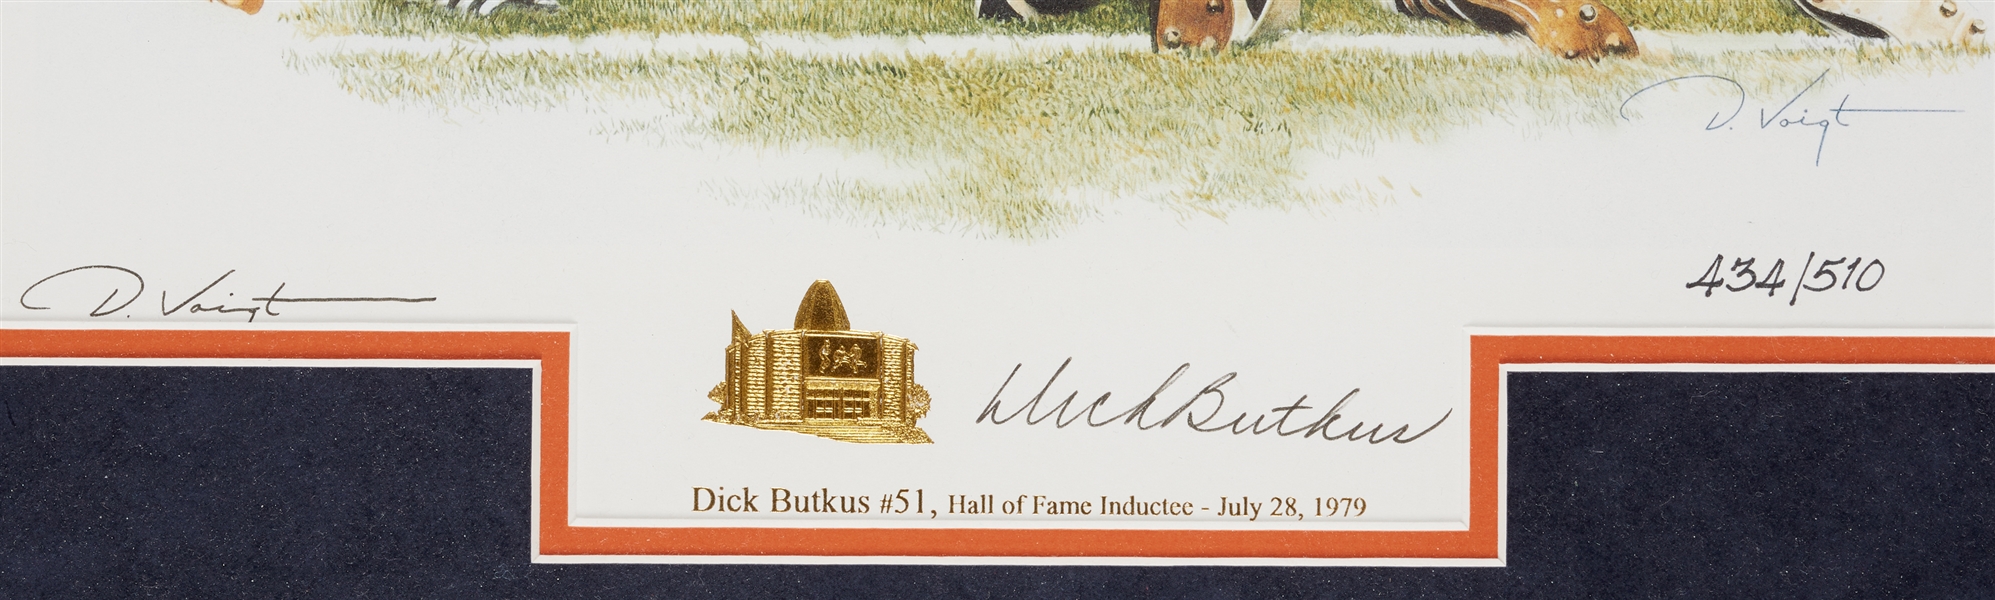 Dick Butkus Signed Hall of Fame Framed Print (434/510)